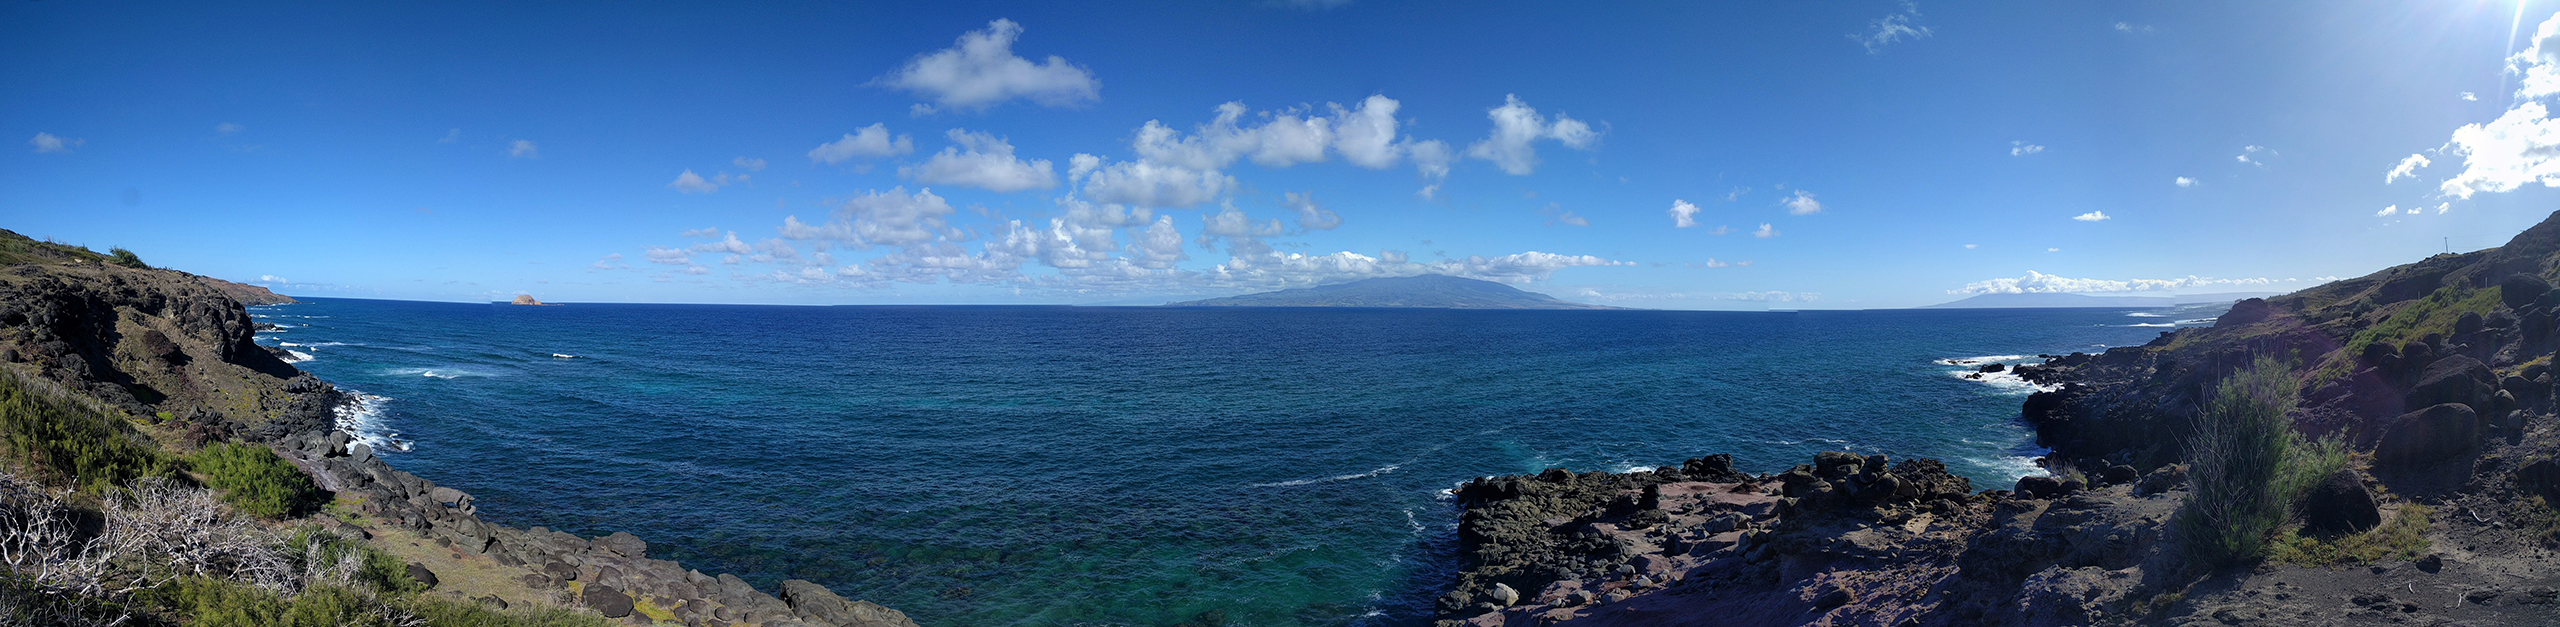 Südostküste von Moloka'i mit Blick auf Maui und Lanai